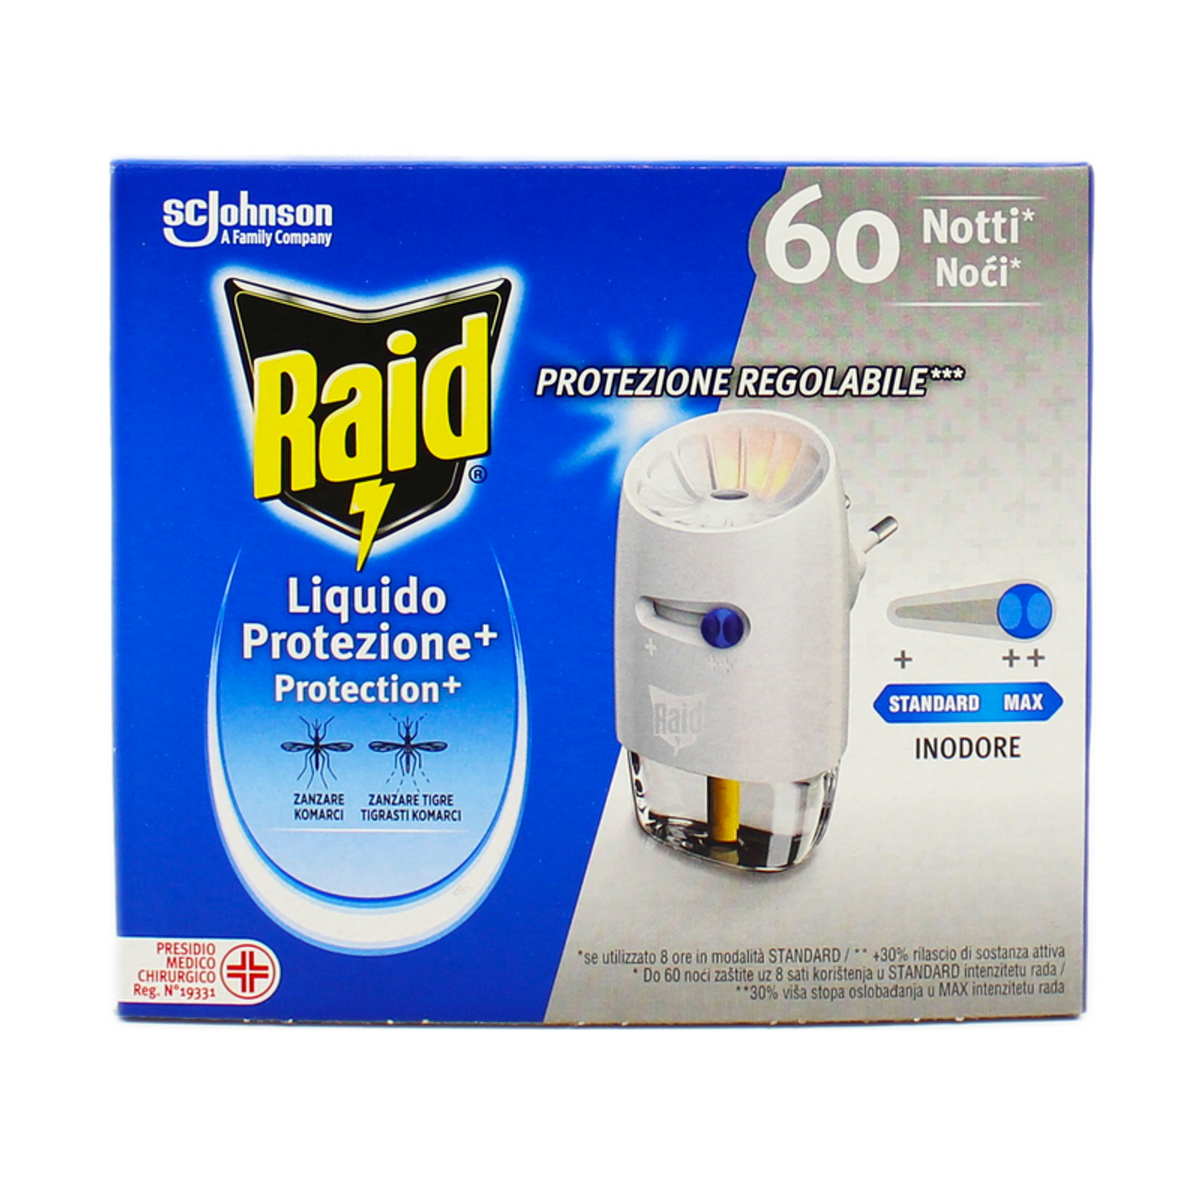 Raid Diffusore + Ricarica Liquida Inodore Protezione+ 60 Notti